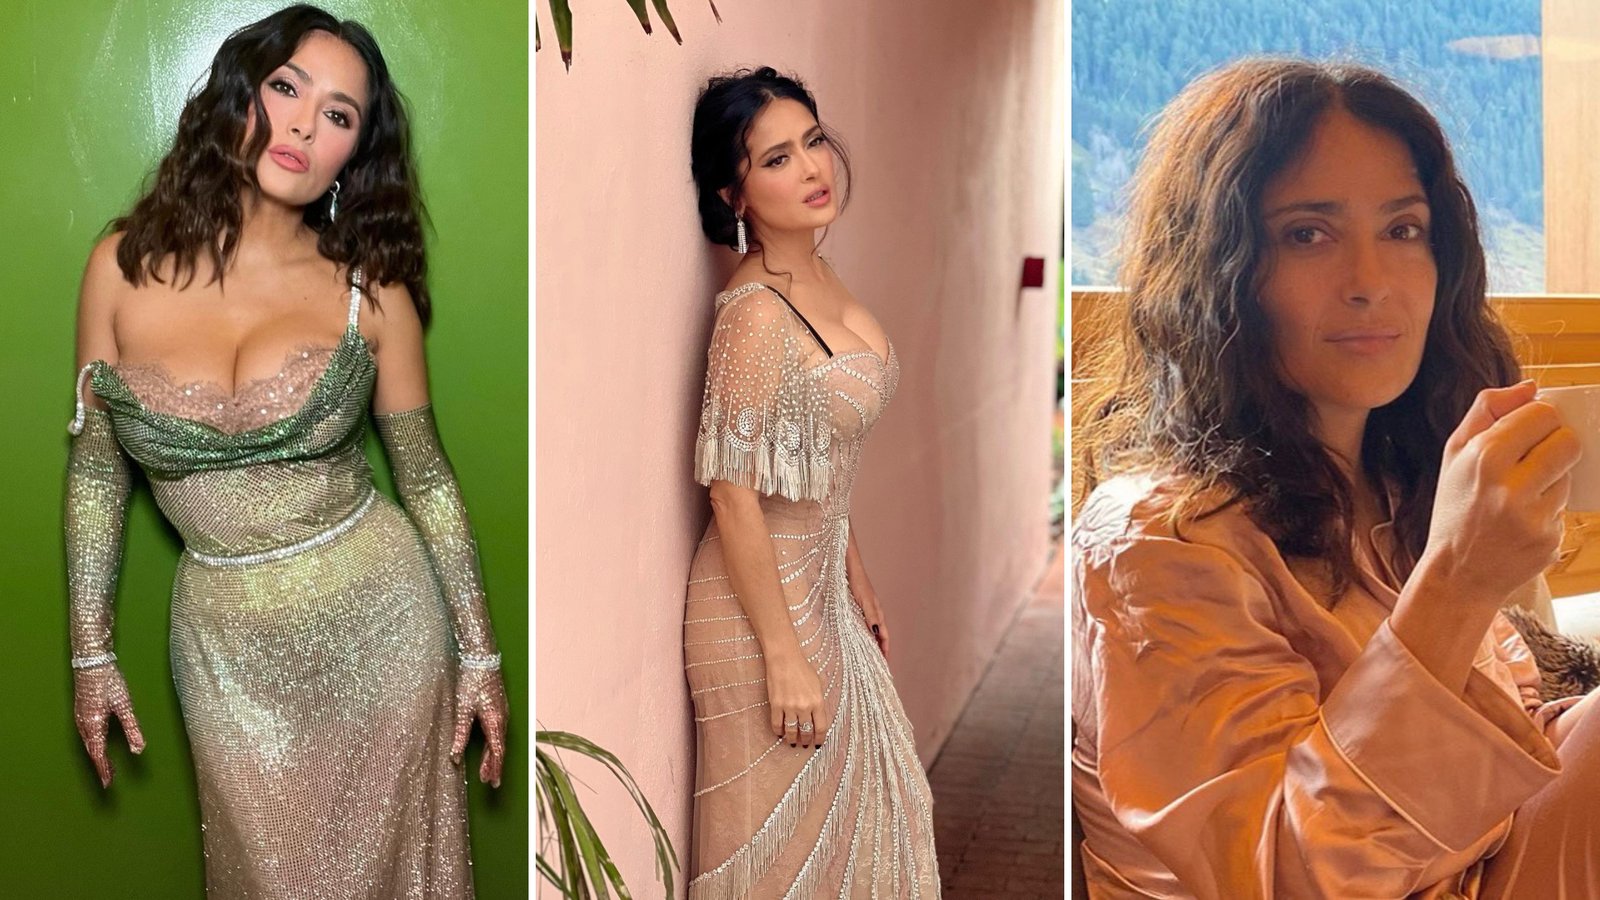 Salma Hayek's ageless beauty stuns fans on Instagram